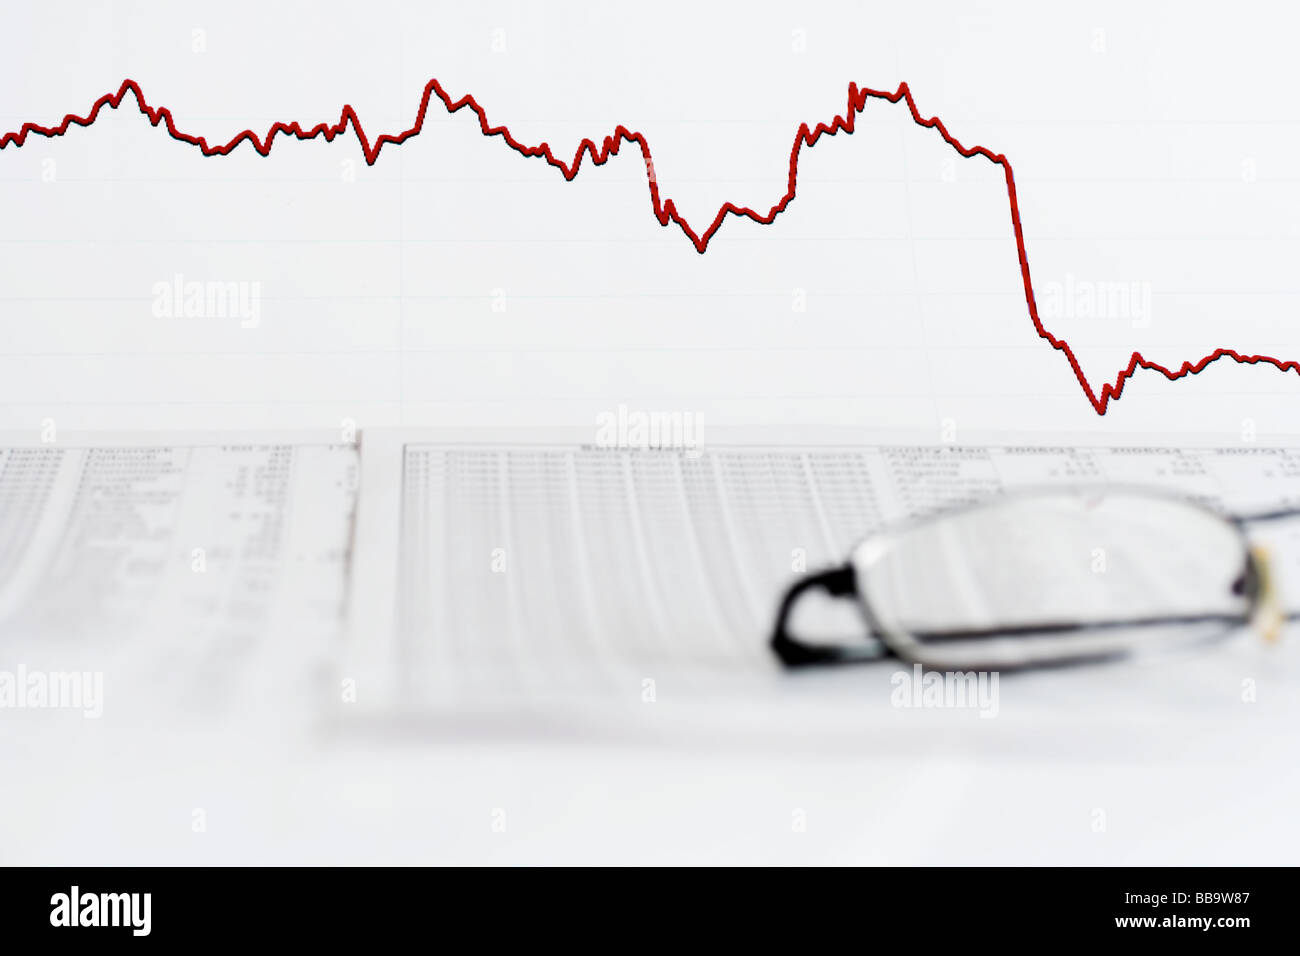 Ascenso y caída de los índices de bolsa. Foto de stock